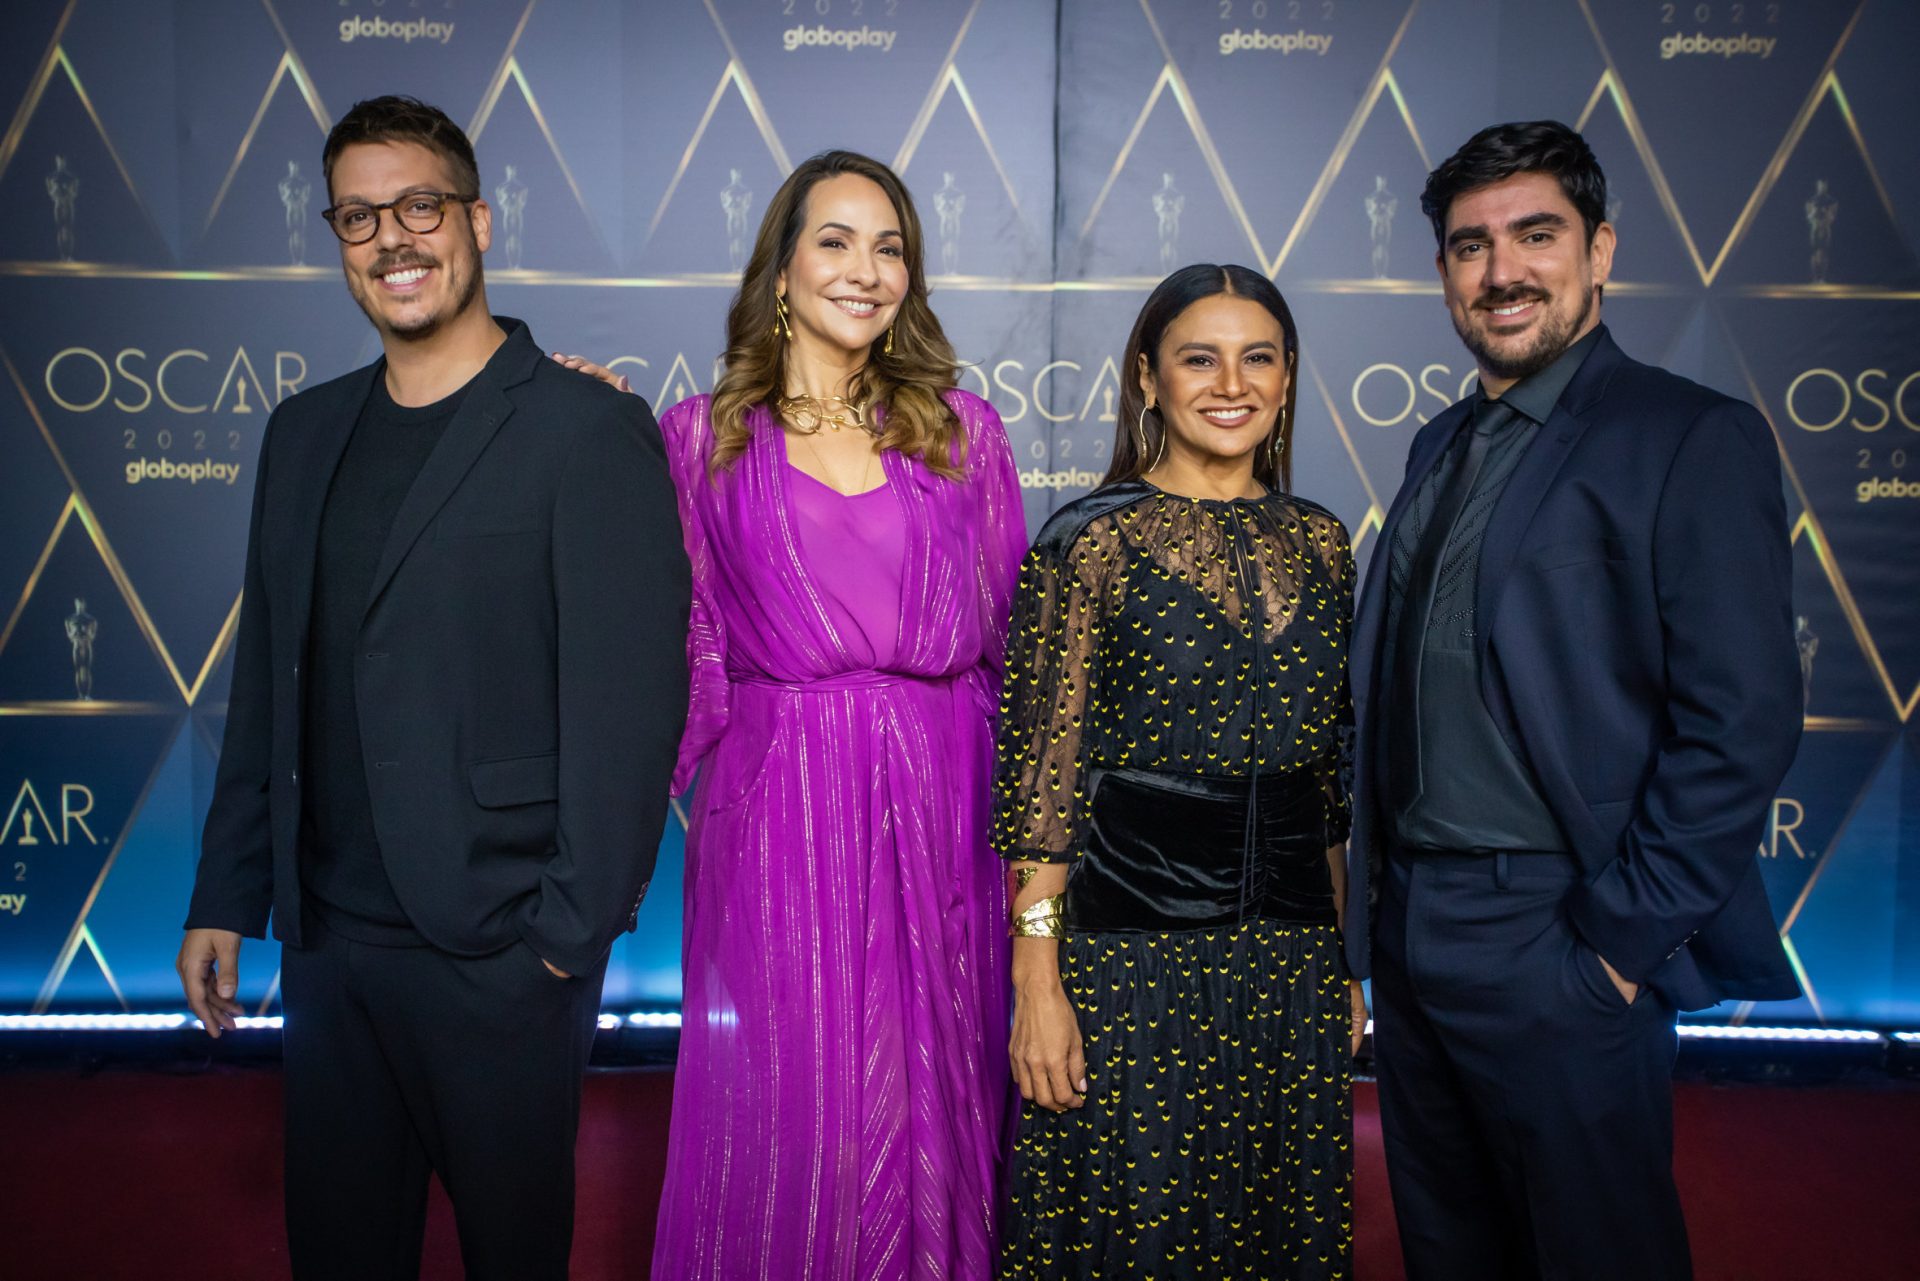 Globoplay exibirá Oscar 2022 de forma gratuita; saiba como acompanhar